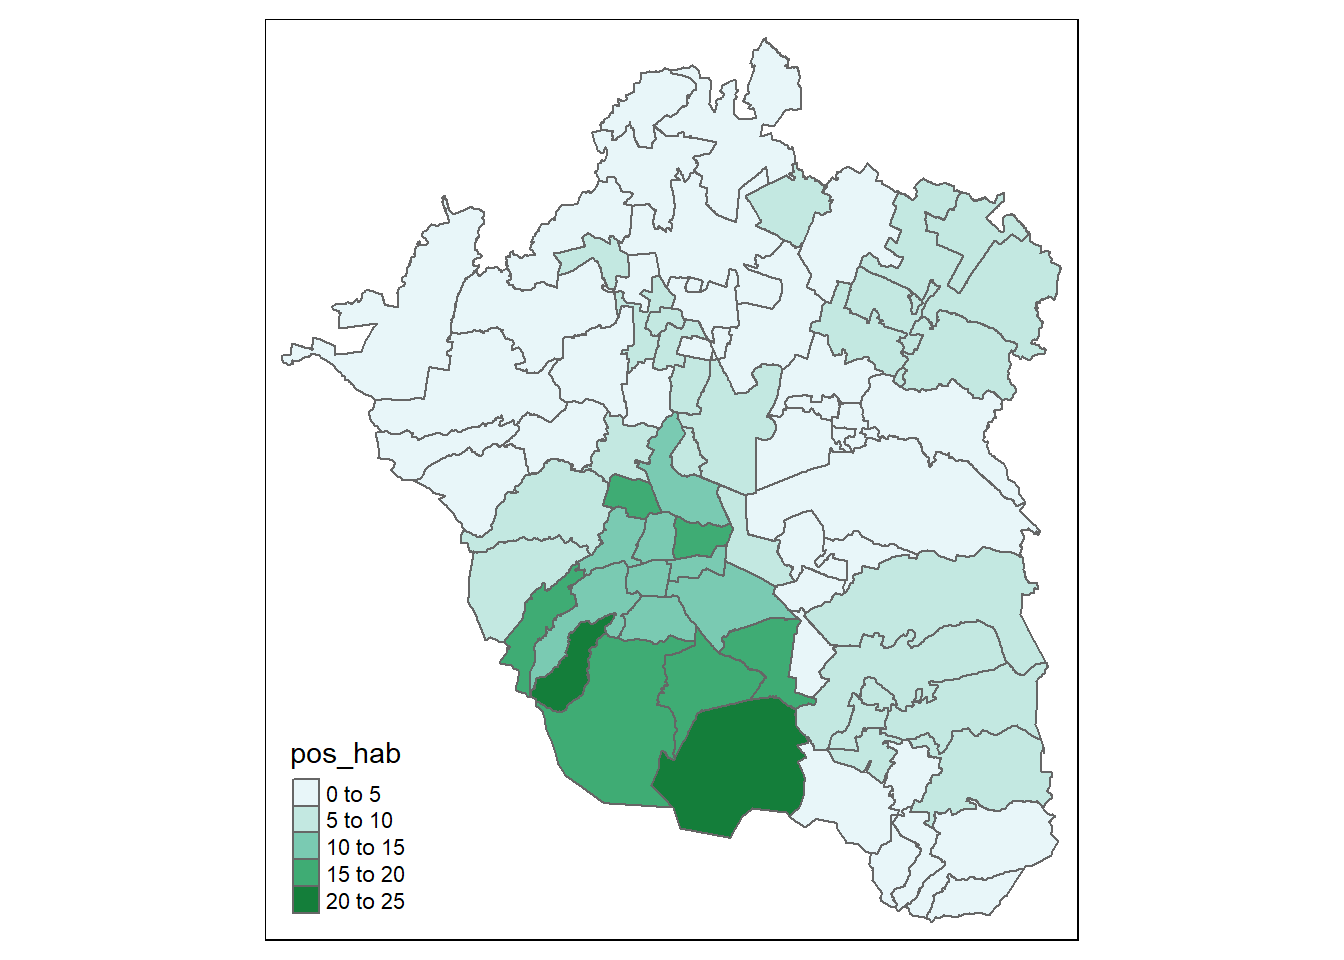 Mapa tematico de la zona metropolitana que muestra la distribucón de la variable 'pos_hab' con el degradado de verdes presentado anteriormente. La Ciudad de México se mantiene de color verde mas obscuro